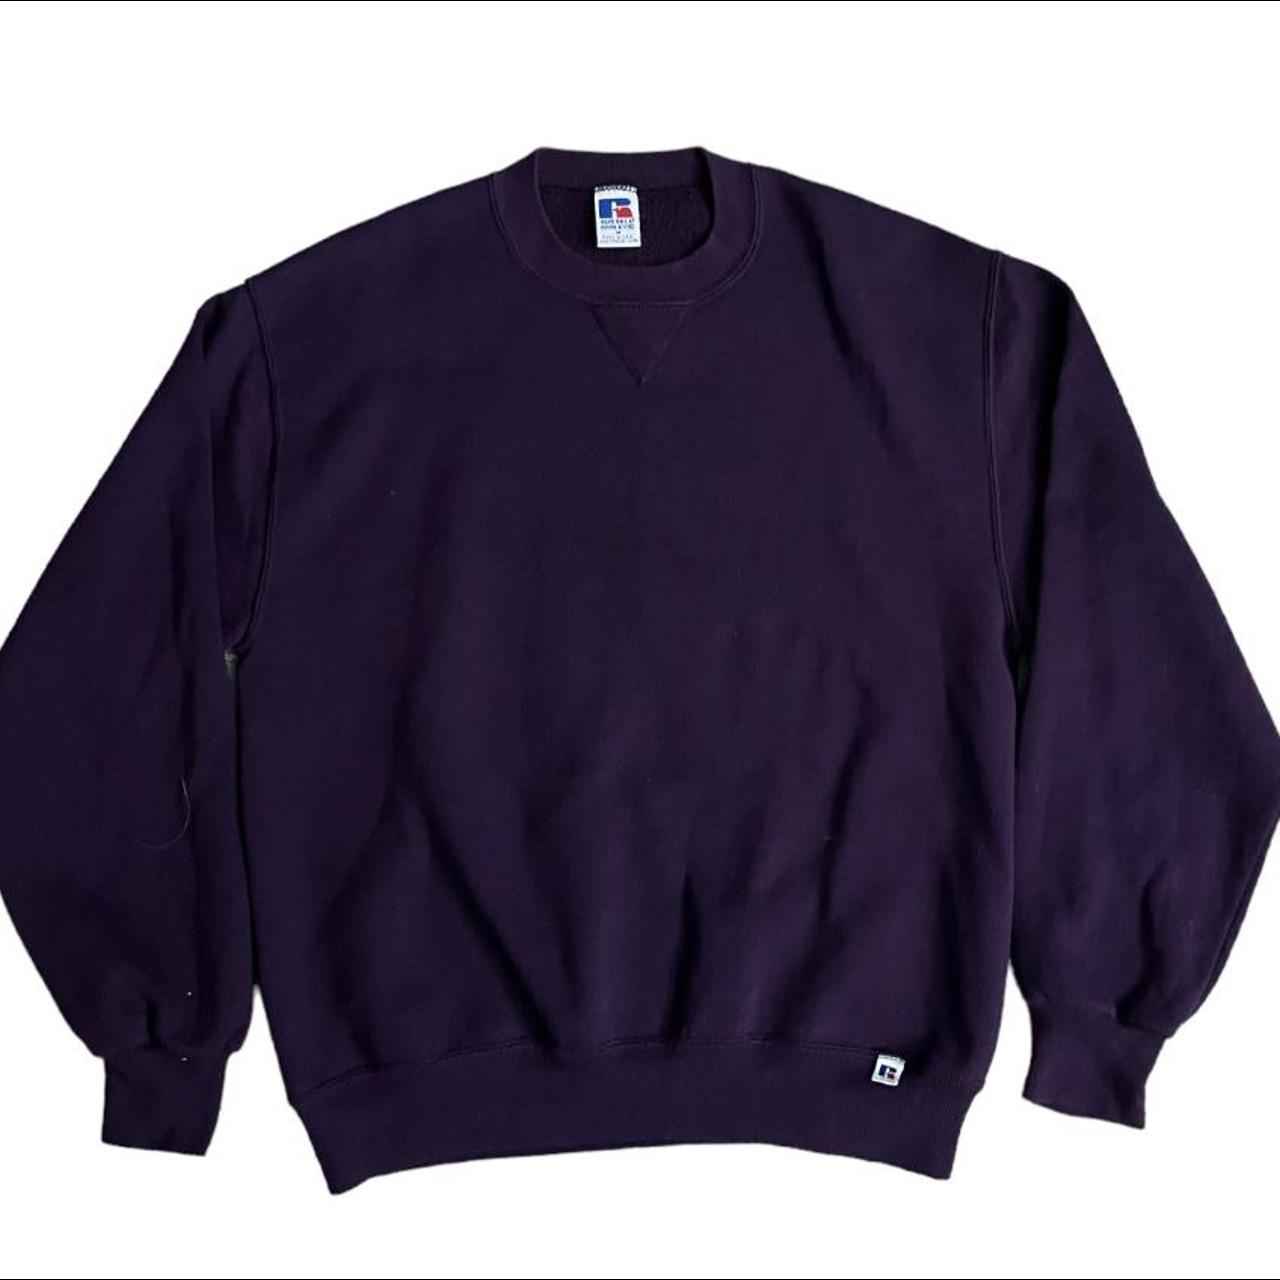 Vintage purple russel athletic sweatshirt Made in... - Depop